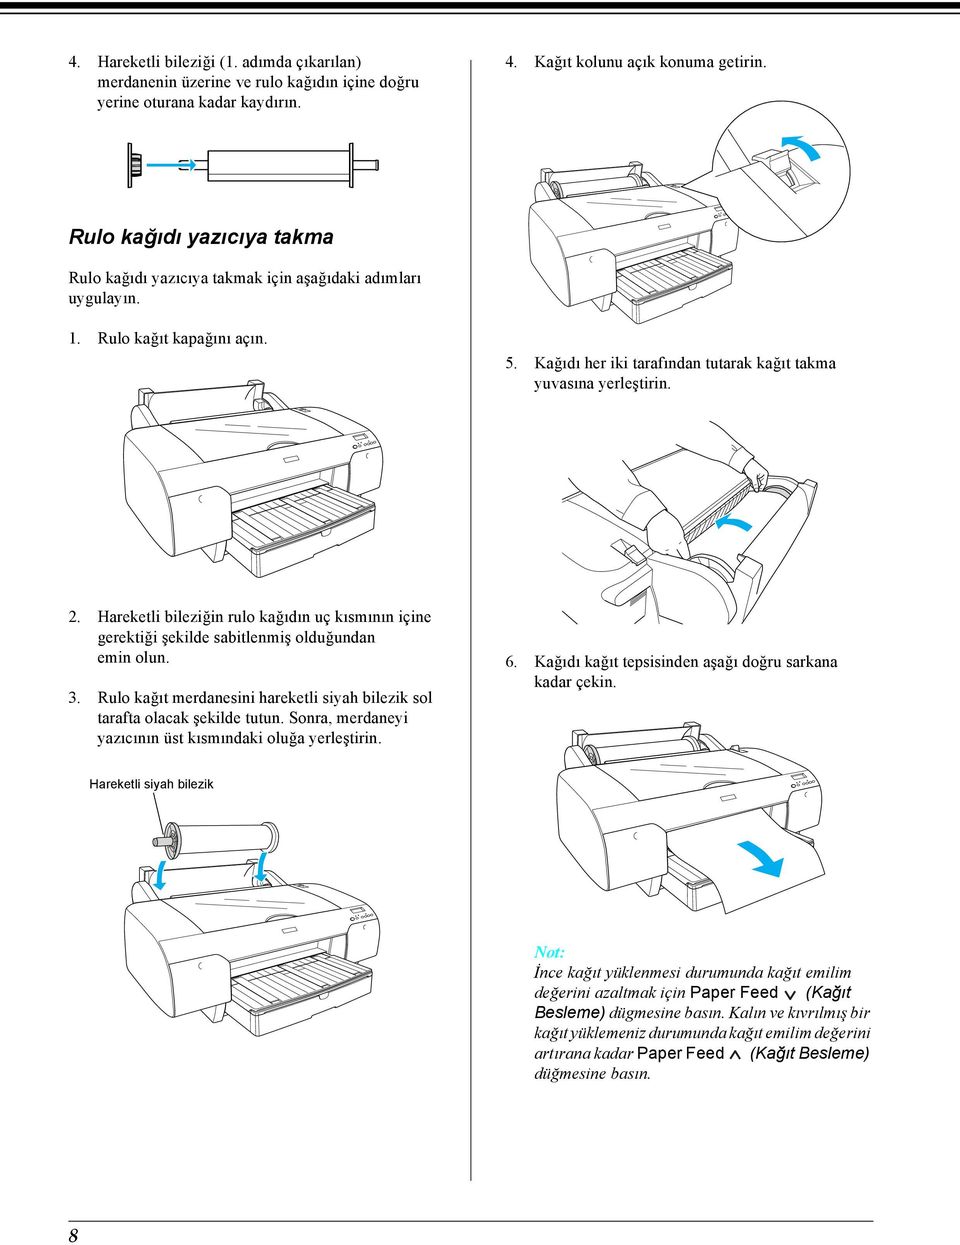 Hareketli bileziğin rulo kağıdın uç kısmının içine gerektiği şekilde sabitlenmiş olduğundan emin olun. 3. Rulo kağıt merdanesini hareketli siyah bilezik sol tarafta olacak şekilde tutun.